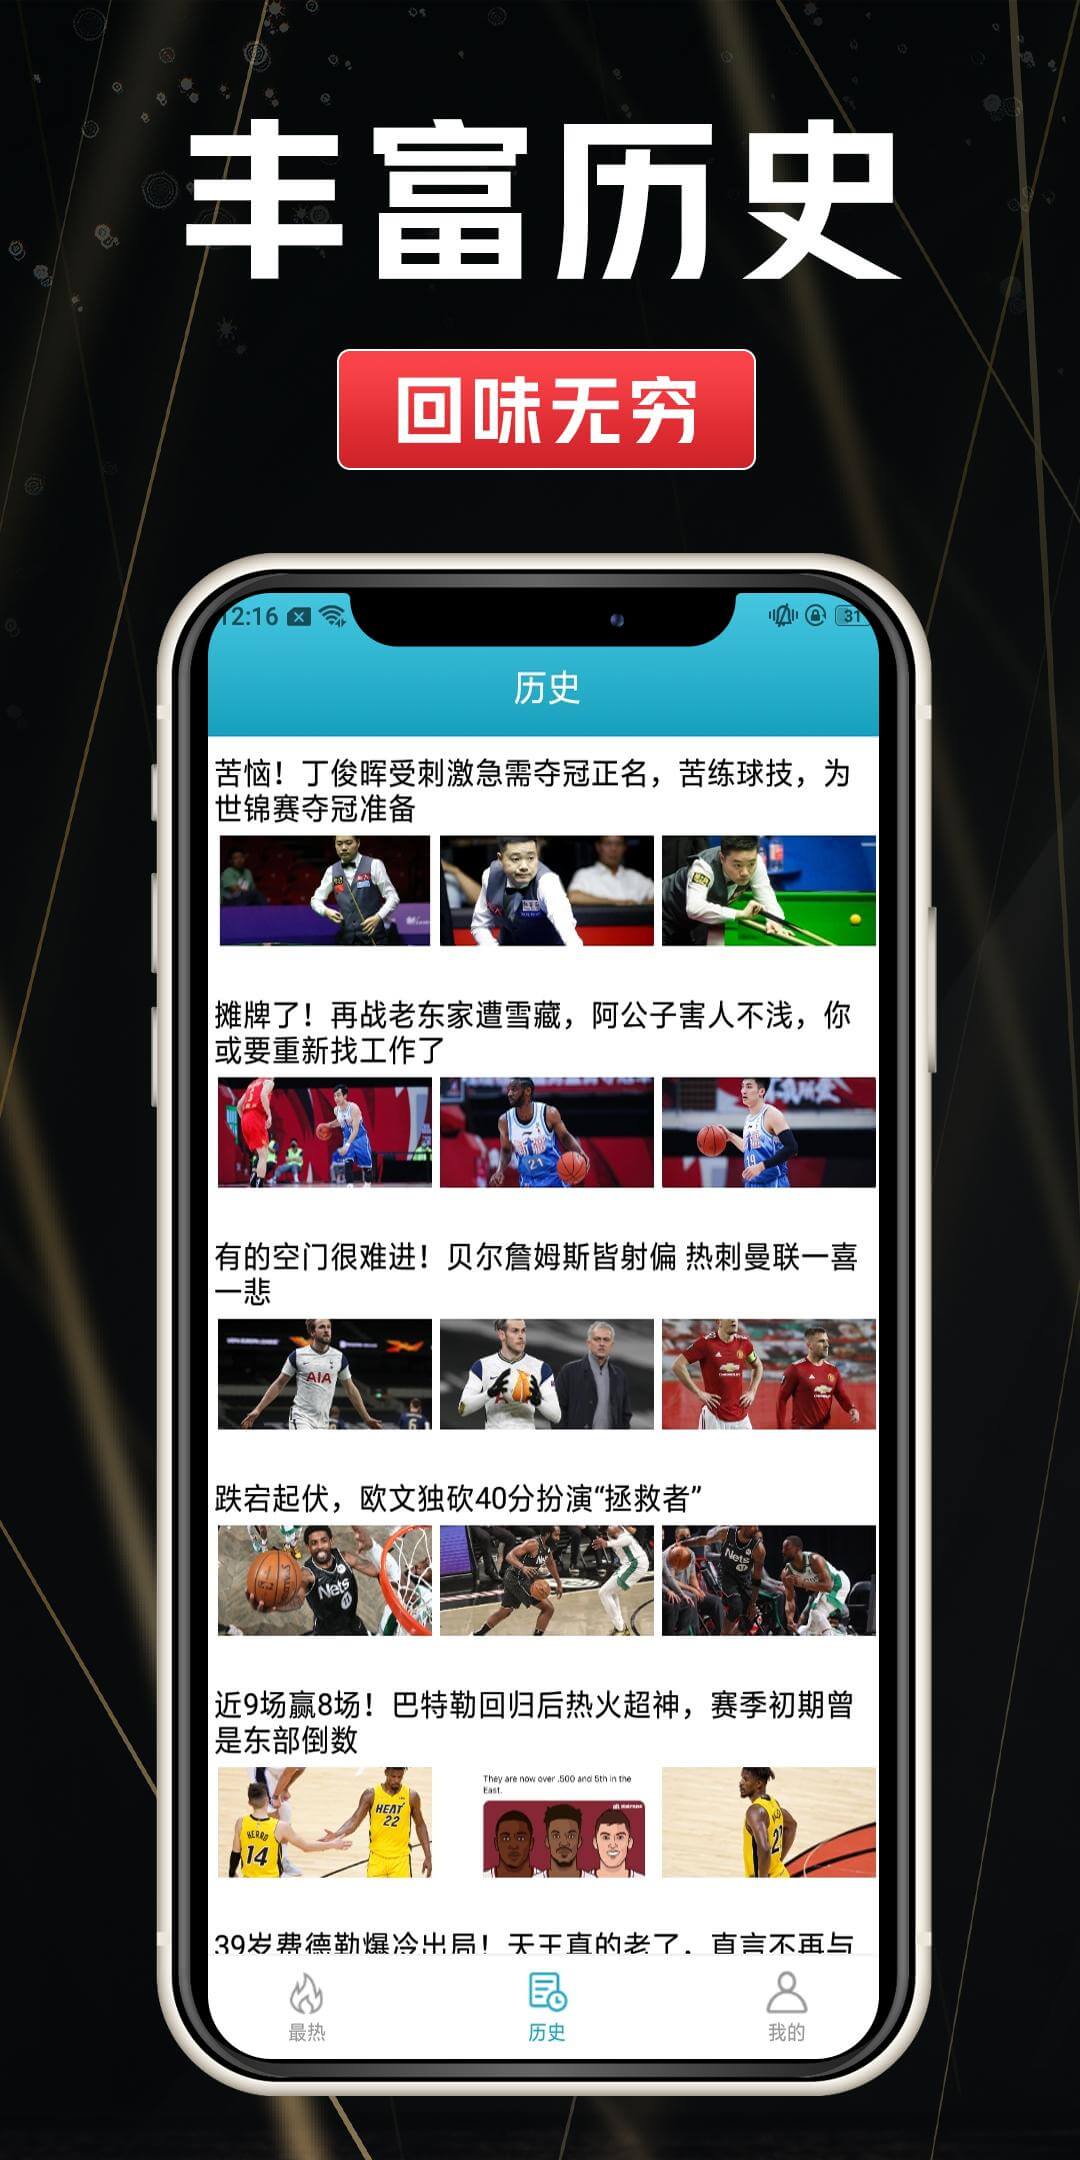 tvt体育首页,tvt体育首页app,tvt体育首页下载